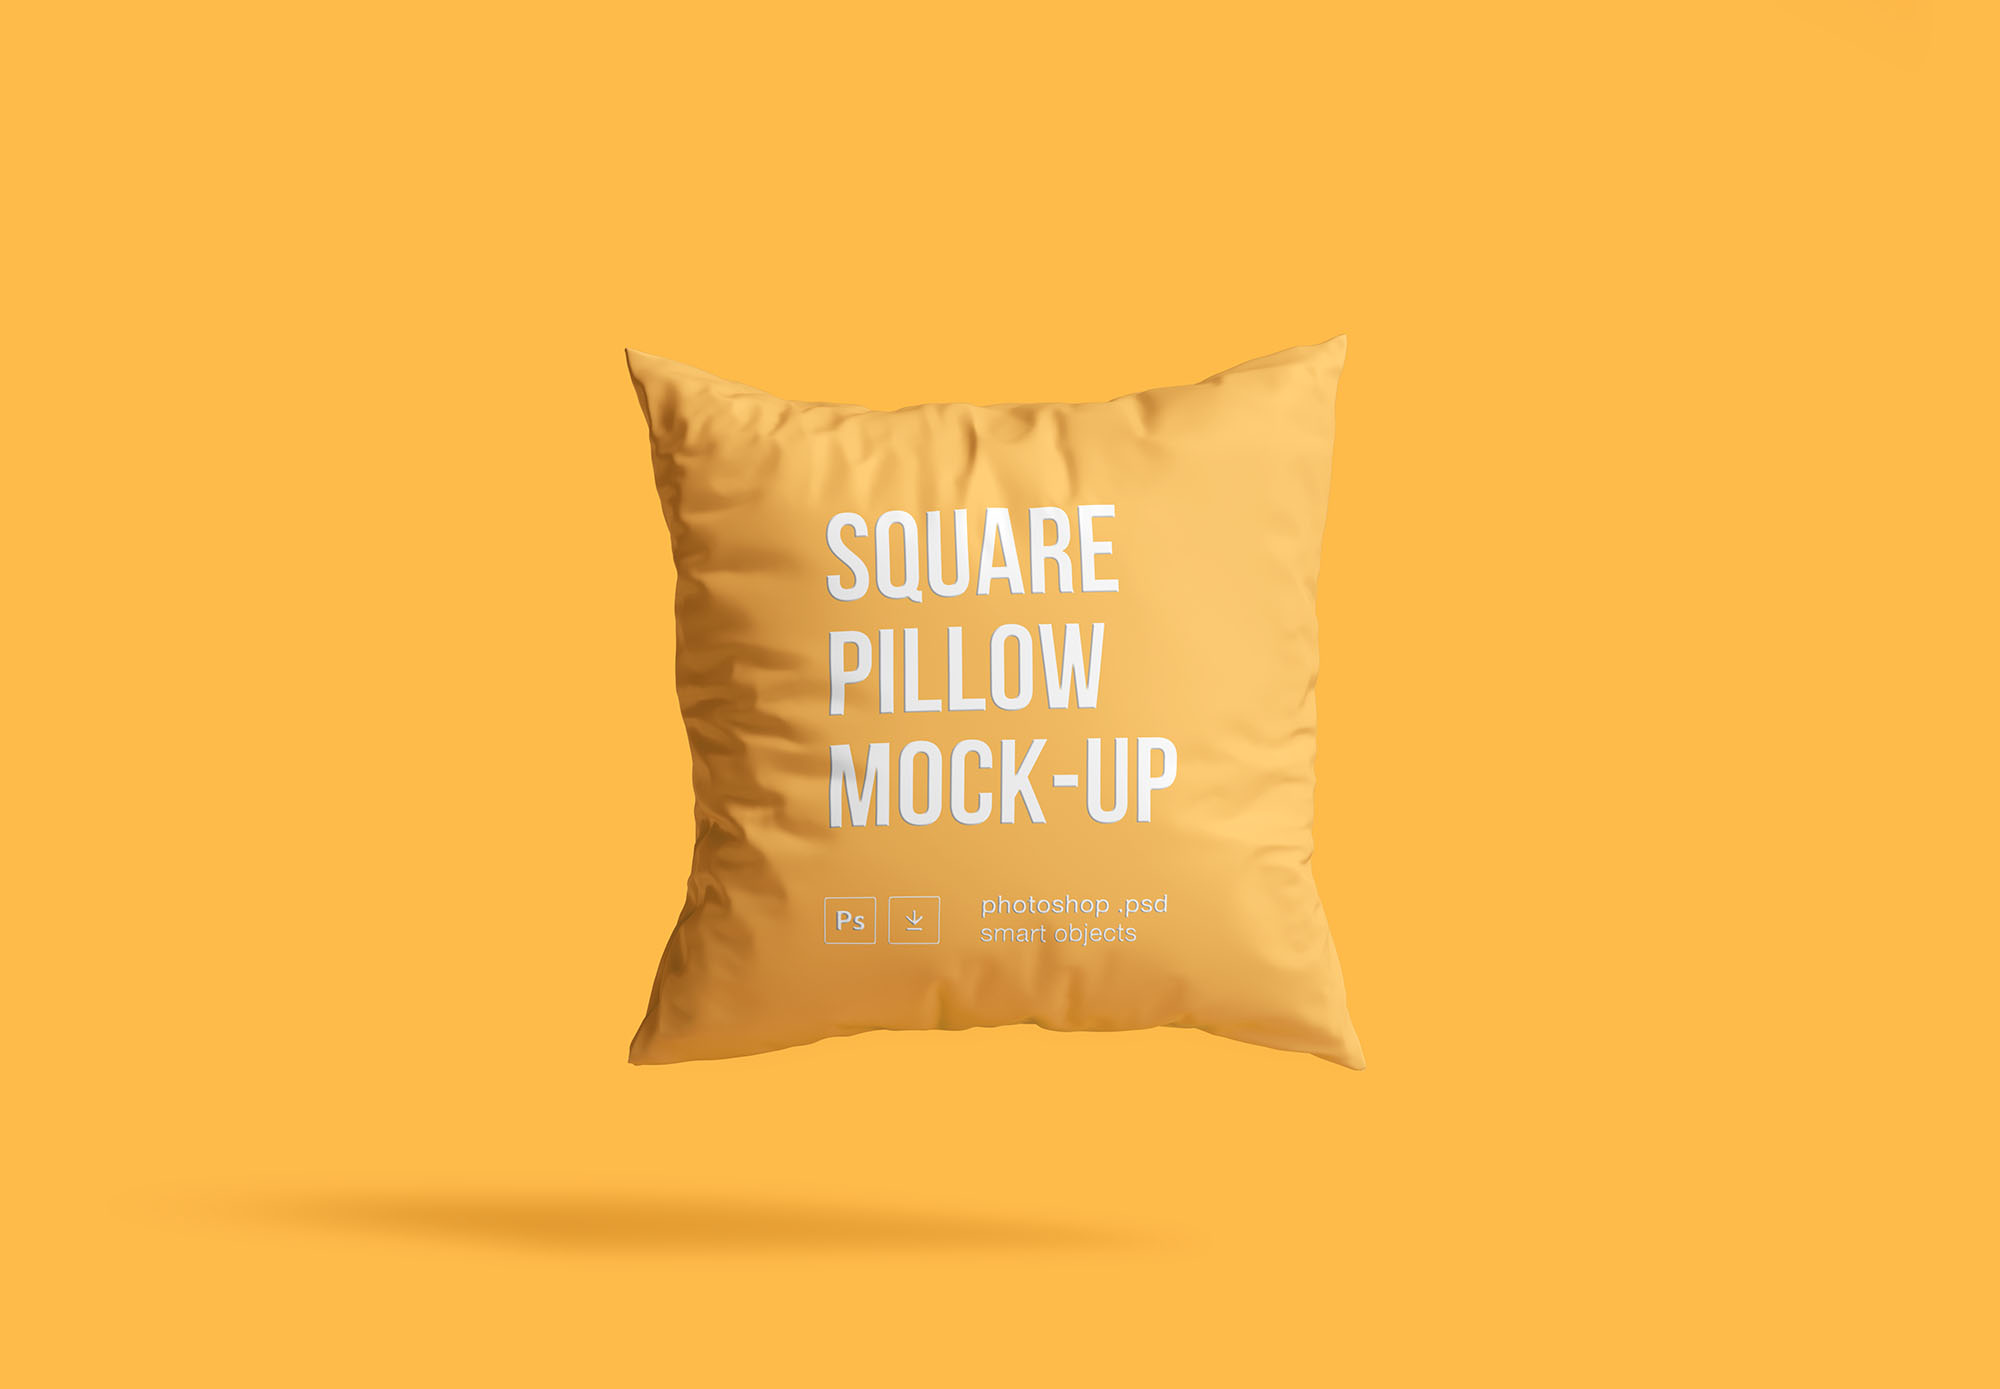 方形枕头抱枕外观设计样机模板 Square Pillow Mockup插图2